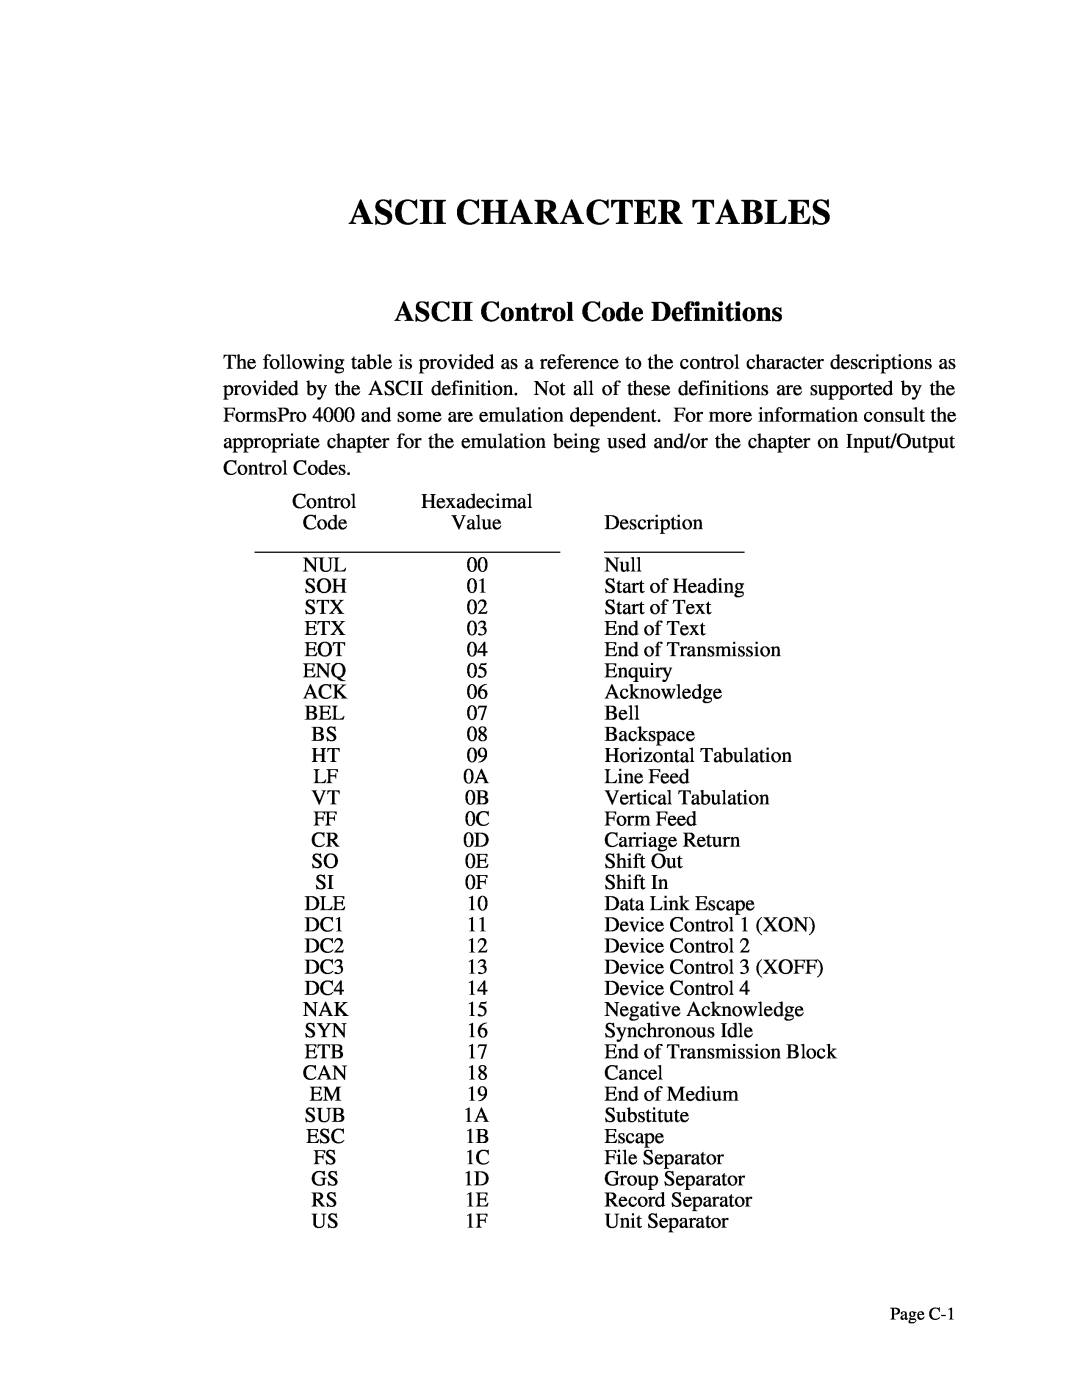 Printek 4500, 4503, 4300 manual Ascii Character Tables, ASCII Control Code Definitions 